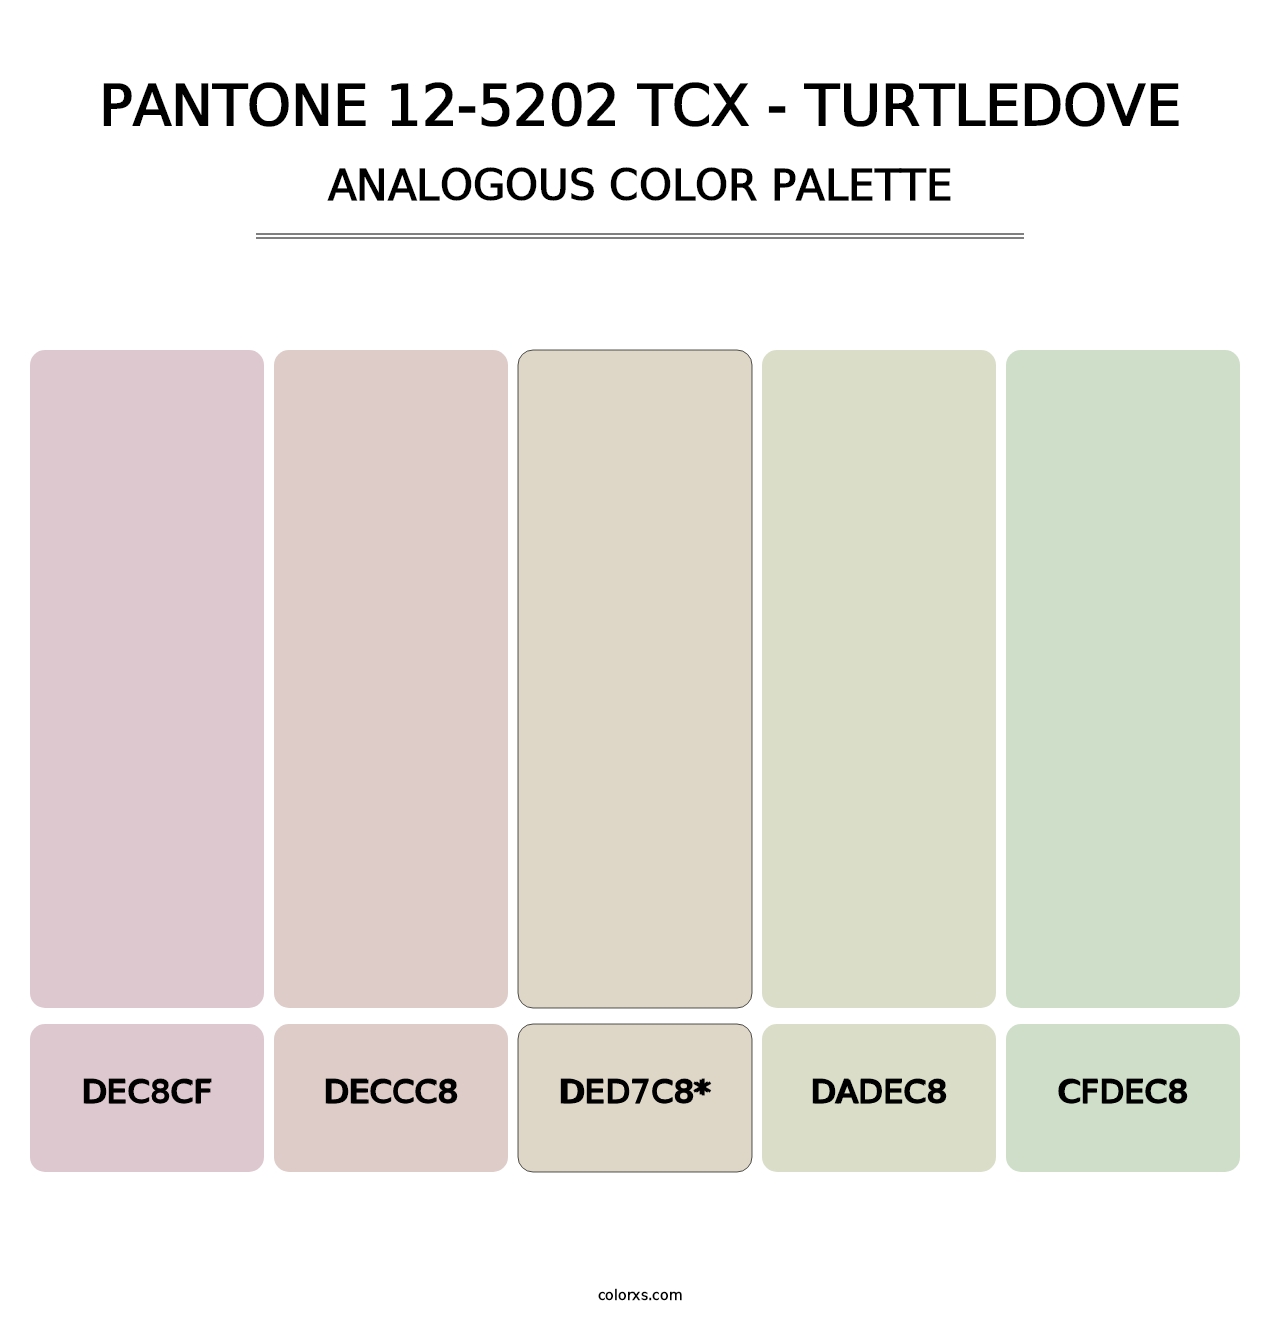 PANTONE 12-5202 TCX - Turtledove - Analogous Color Palette